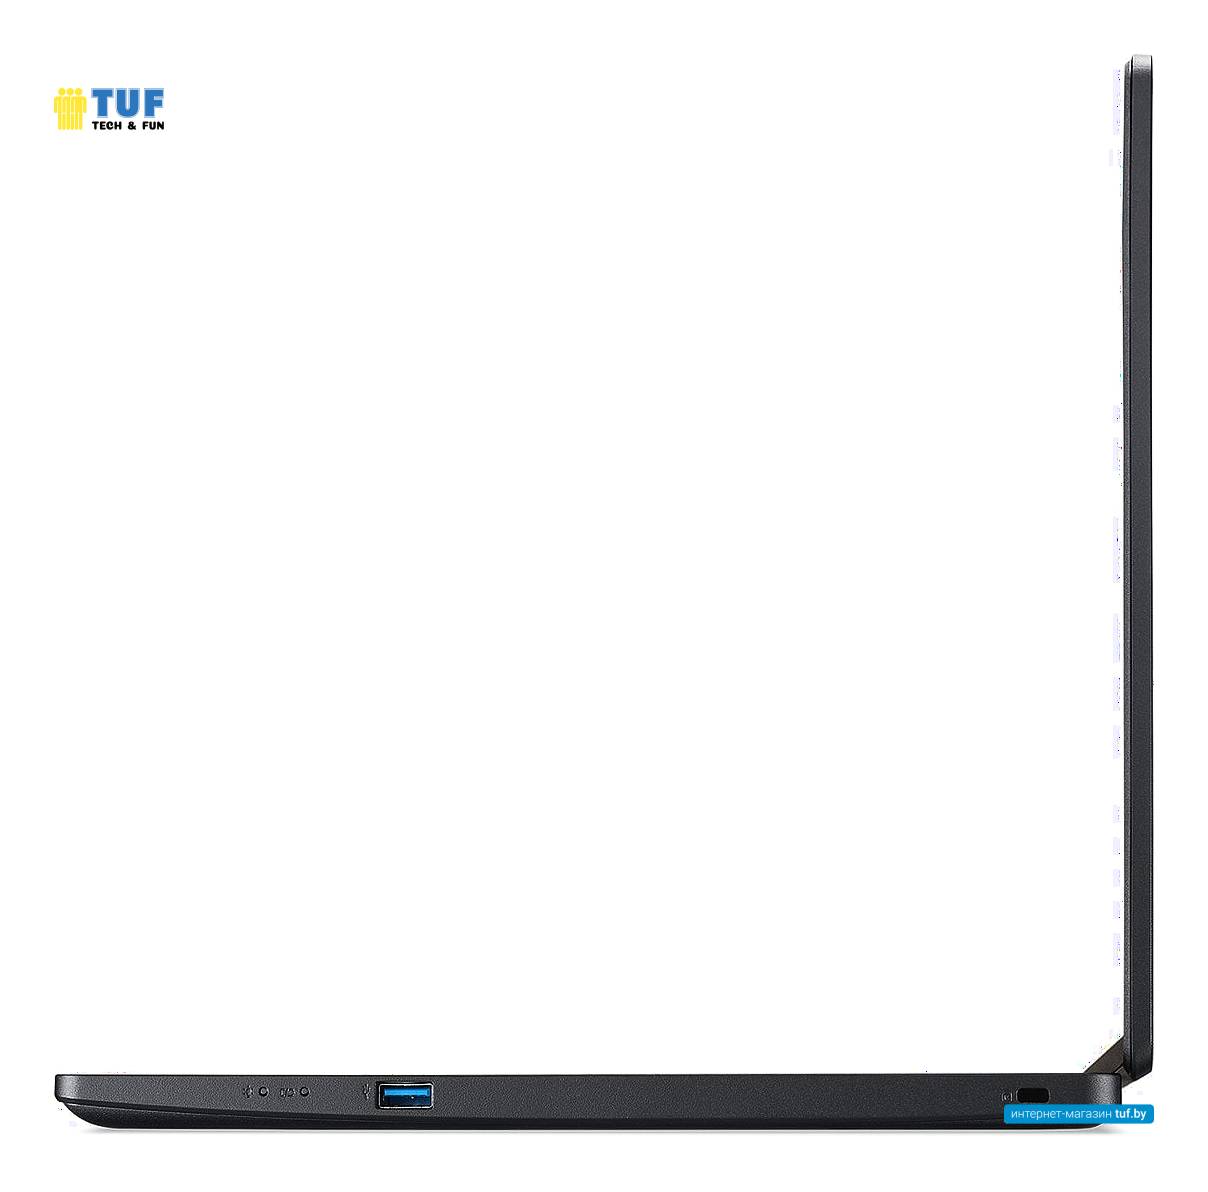 Ноутбук Acer TravelMate P2 TMP215-53-564X NX.VPVER.009